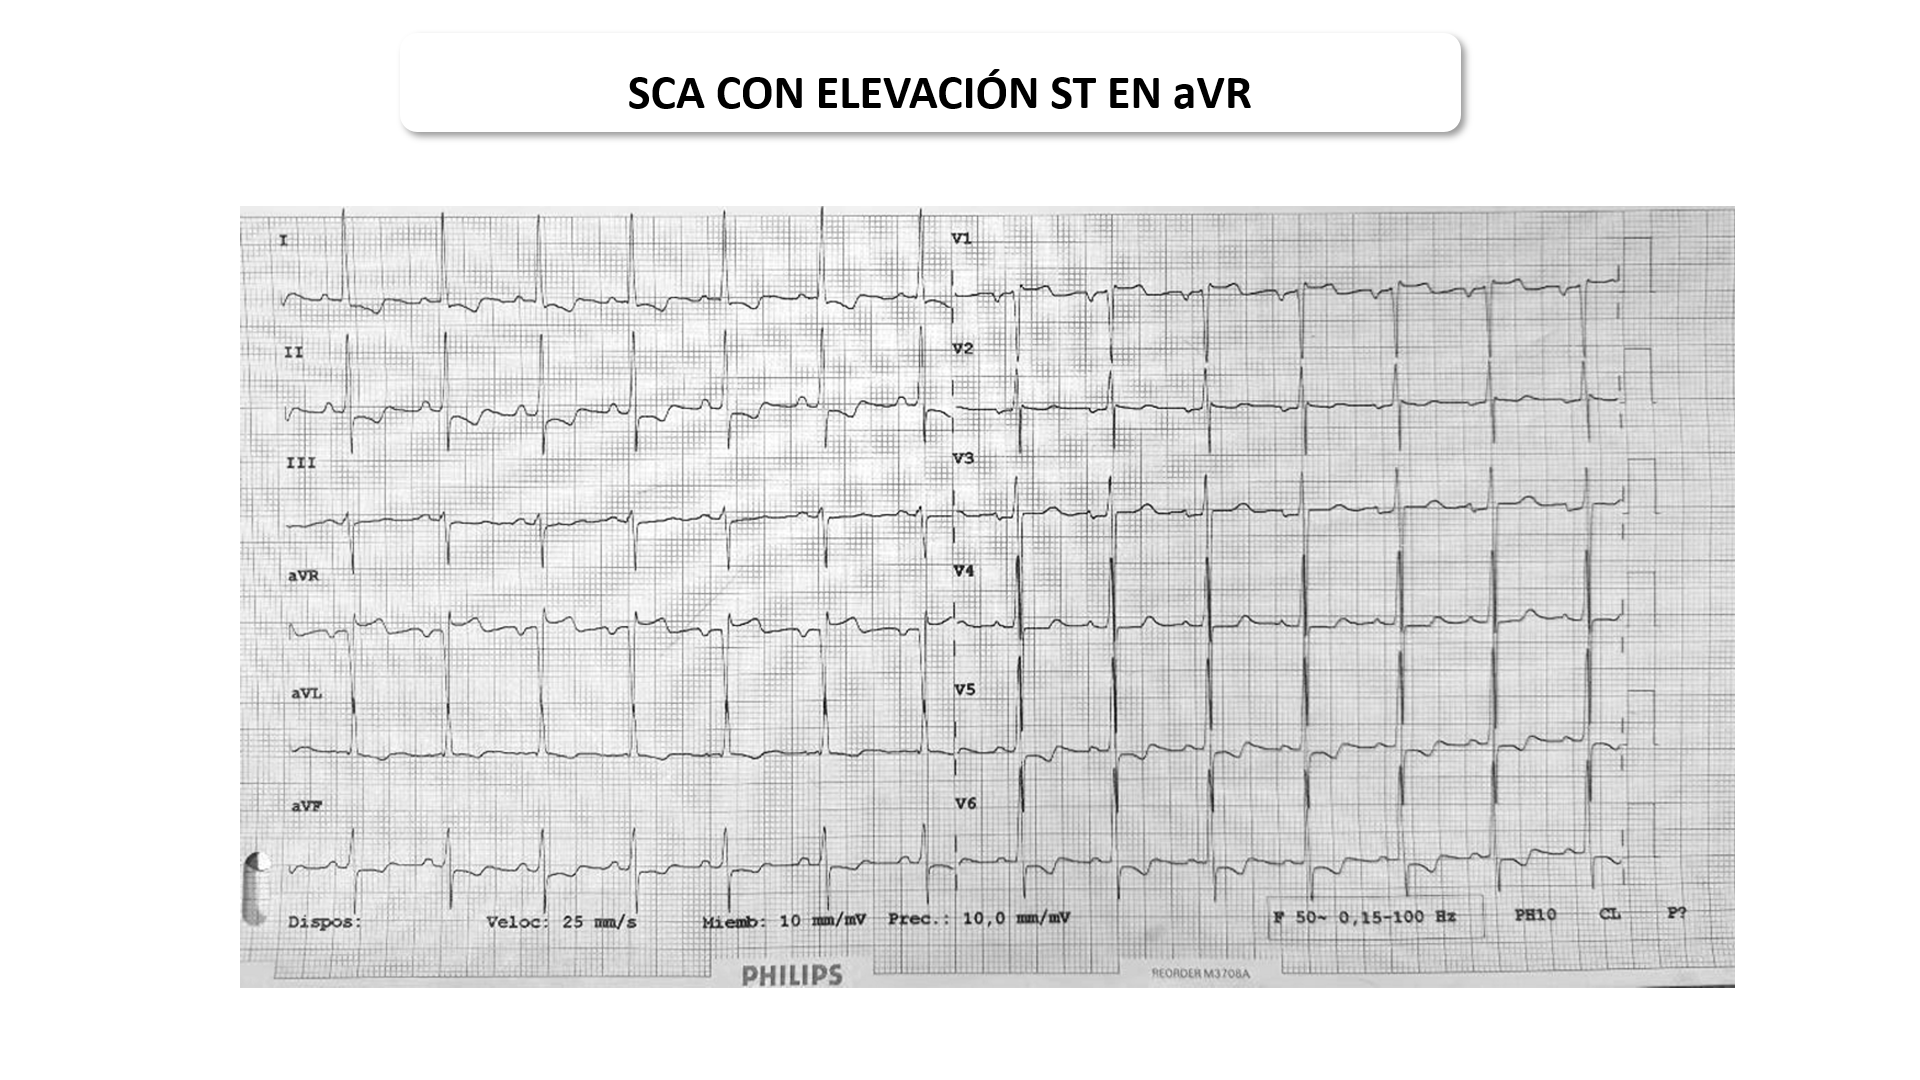 SCA, elevación de ST en aVR